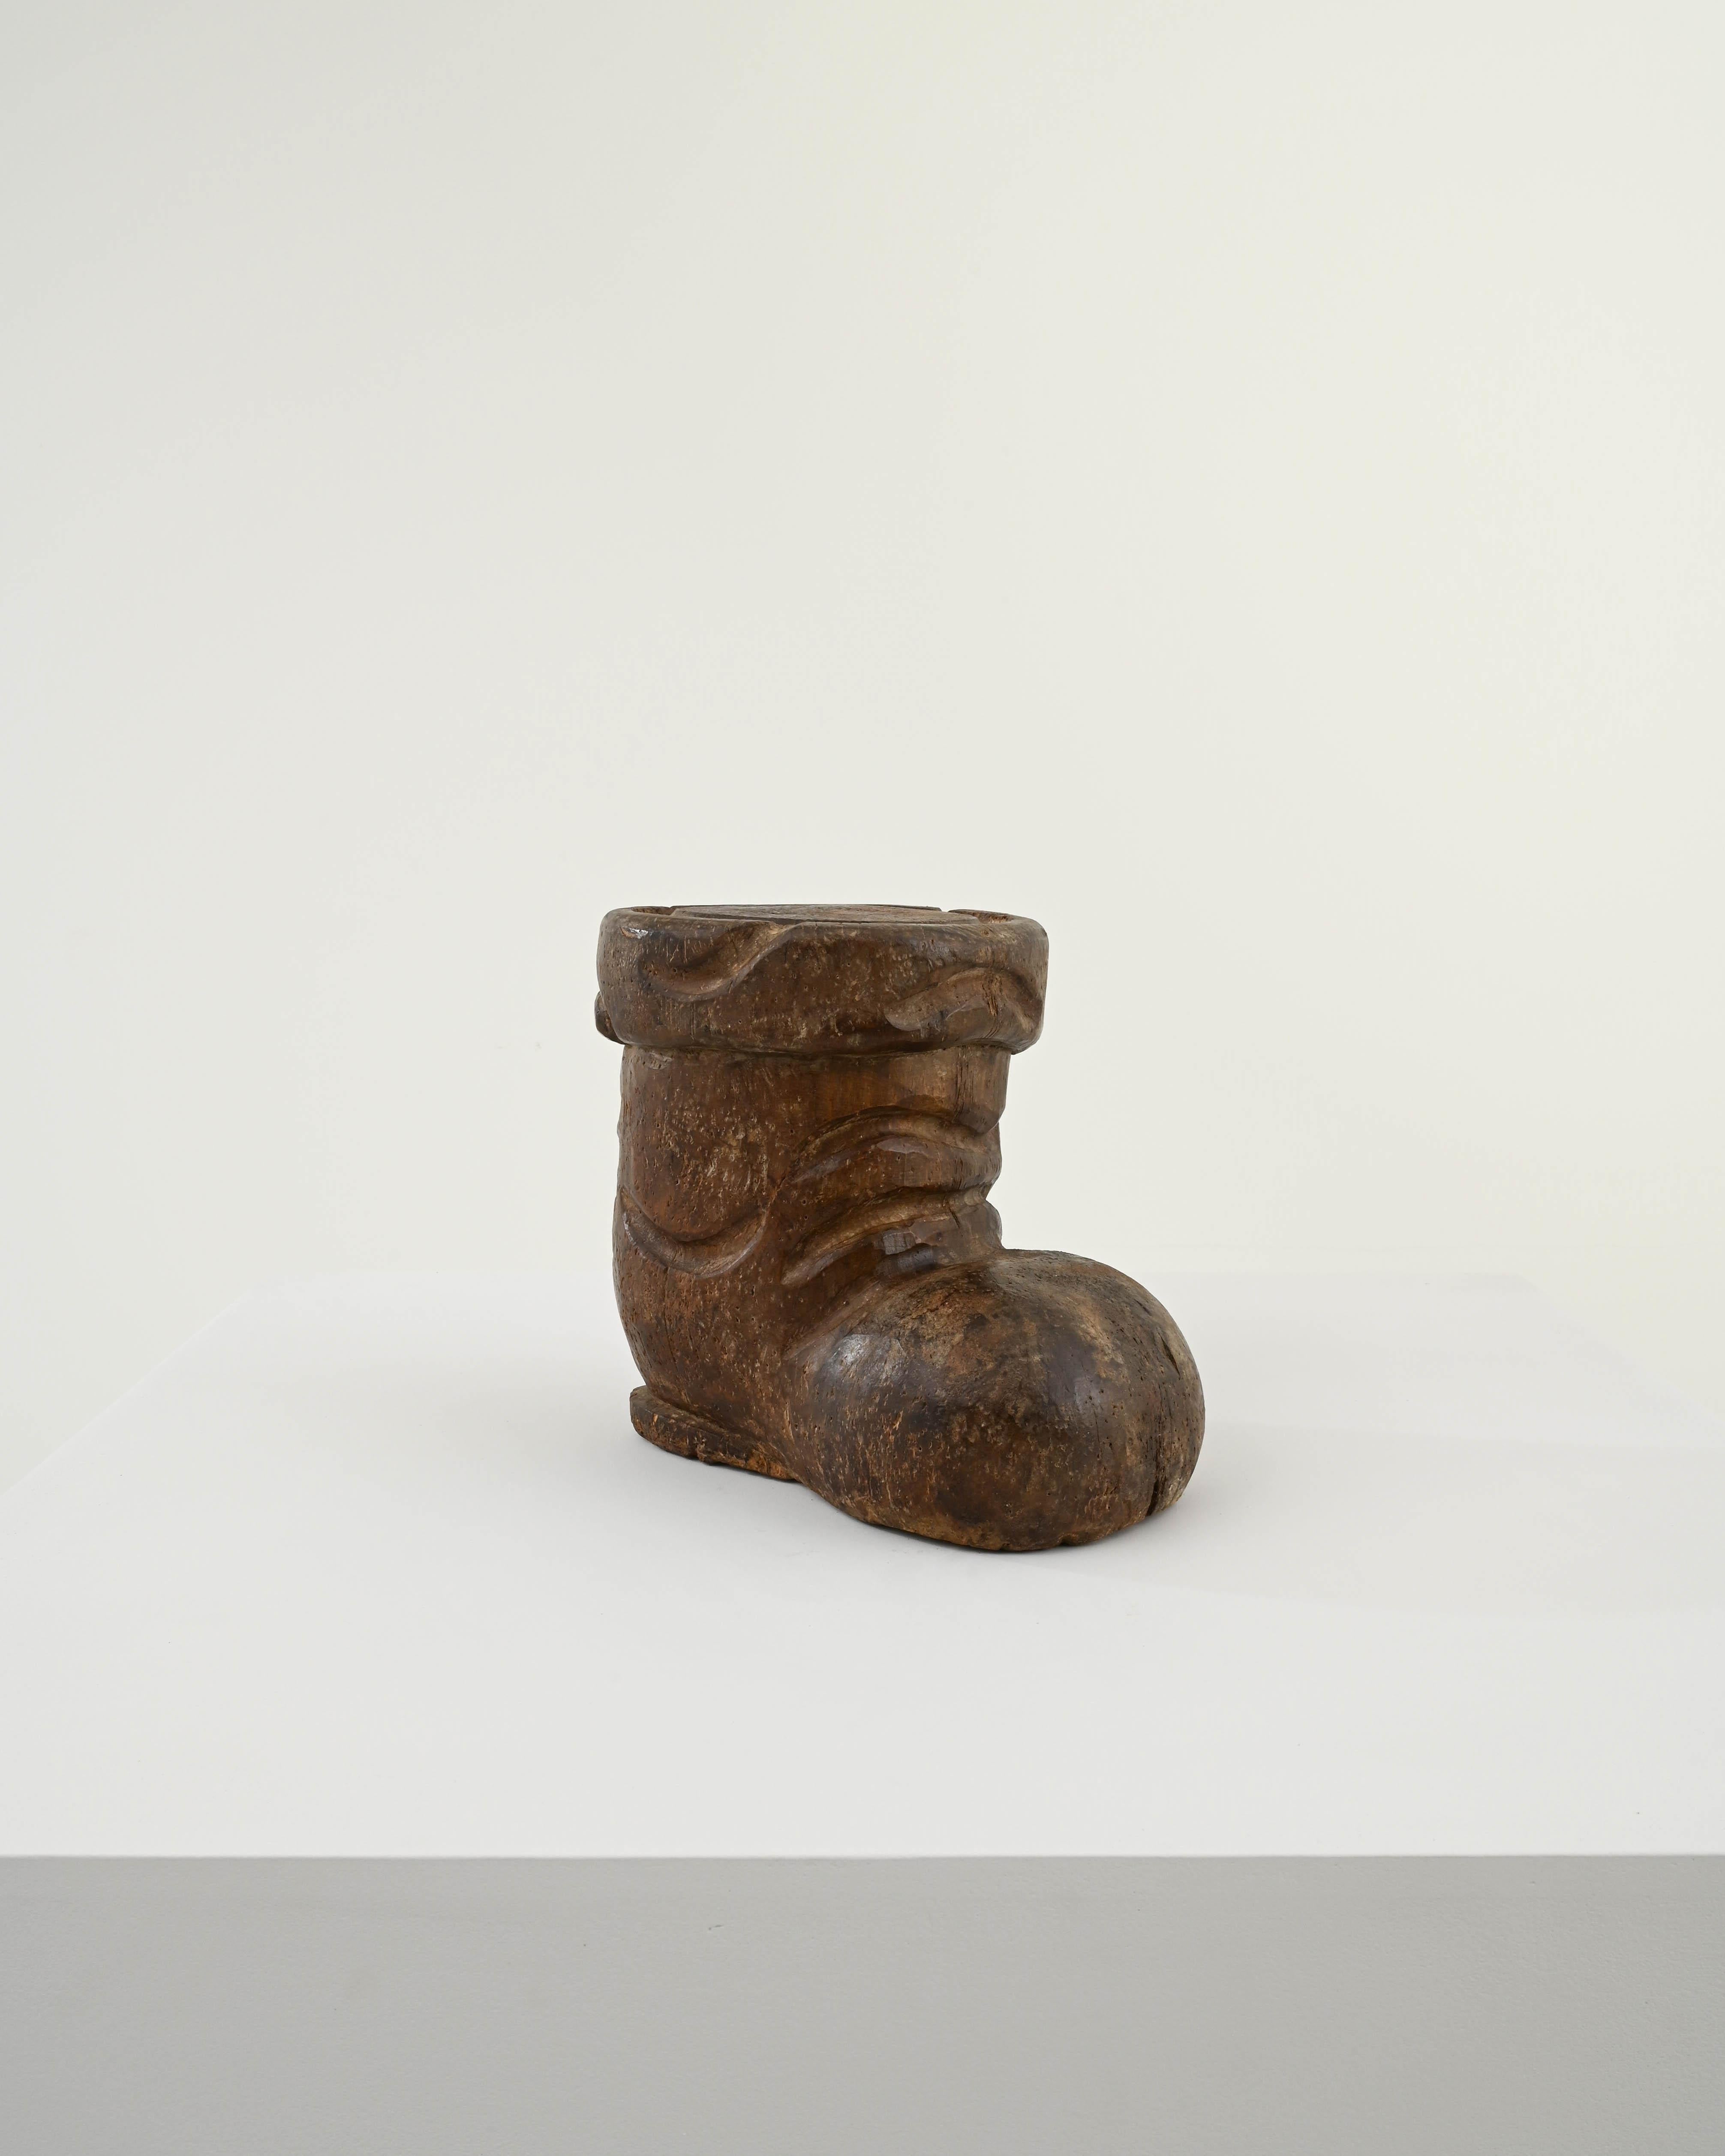 Entrez dans un charme fantaisiste avec cette décoration de bottes en bois sculpté française du 20e siècle. Habilement fabriquée, cette botte en bois capture l'essence d'une chaussure bien usée, avec des détails sculptés de façon complexe qui mettent